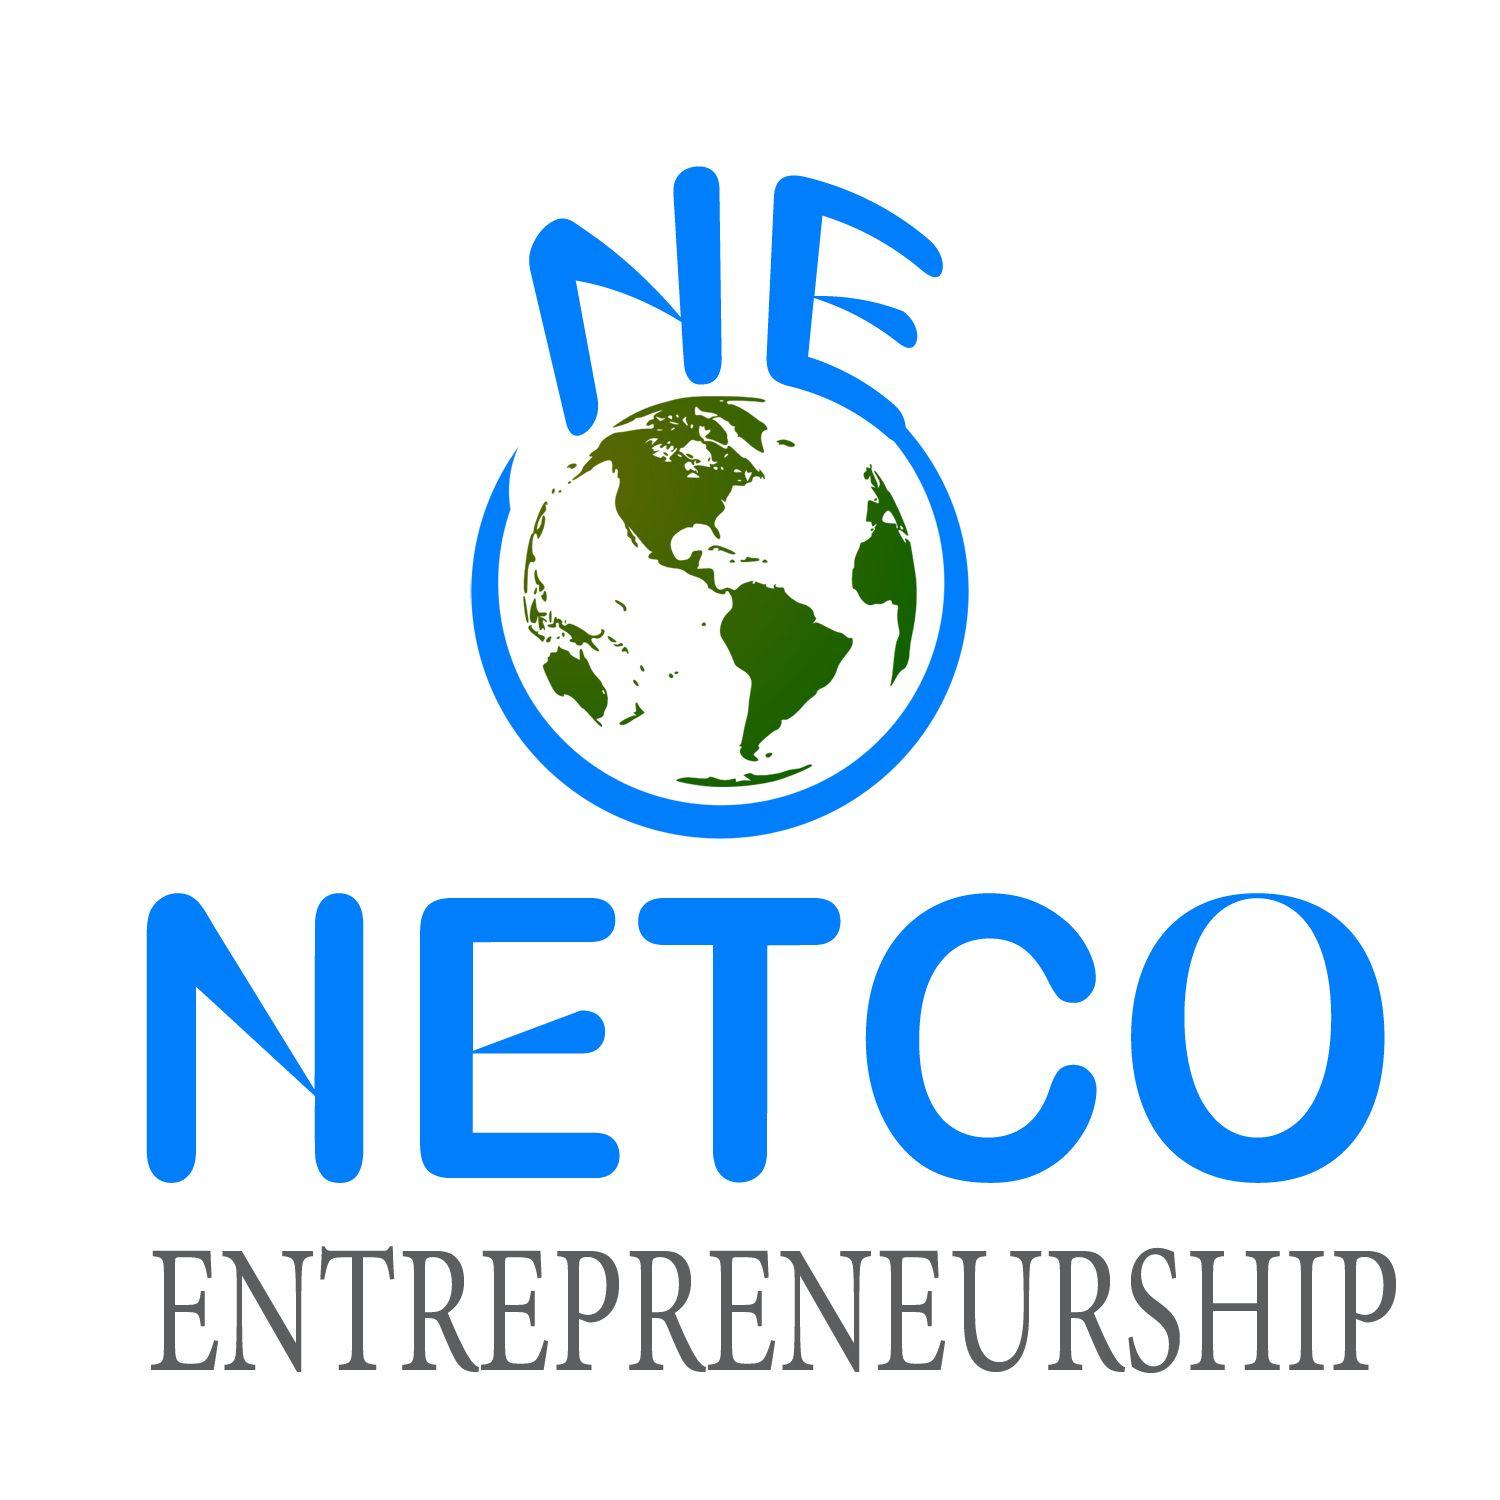 NE Logo - Bold, Feminine, Business Consultant Logo Design for Netco ...